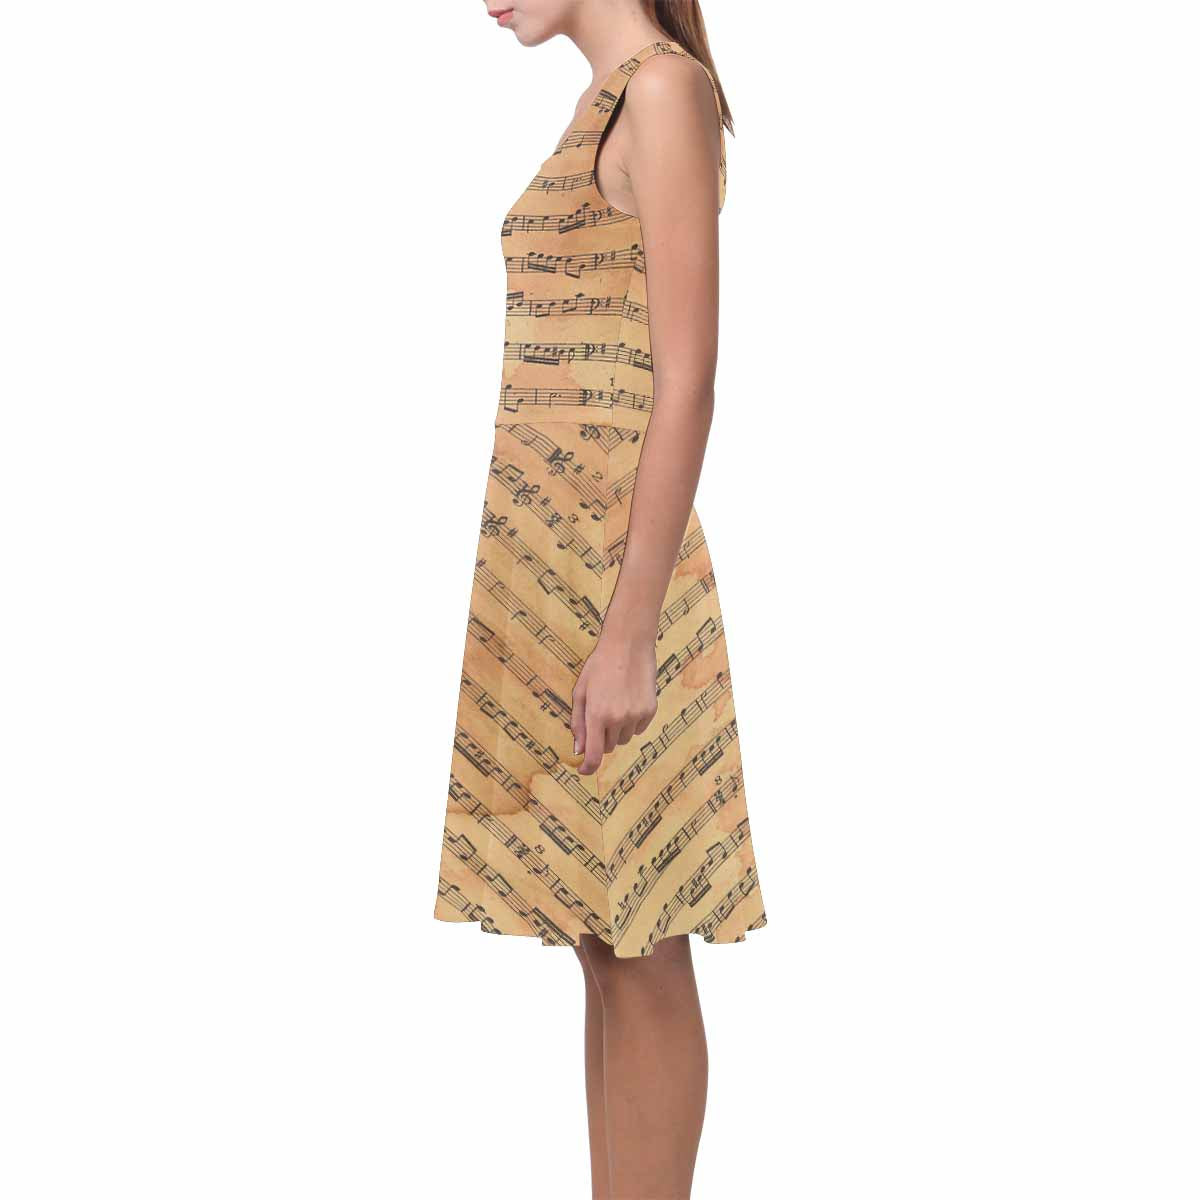 Antique General summer dress, MODEL 09534, design 23